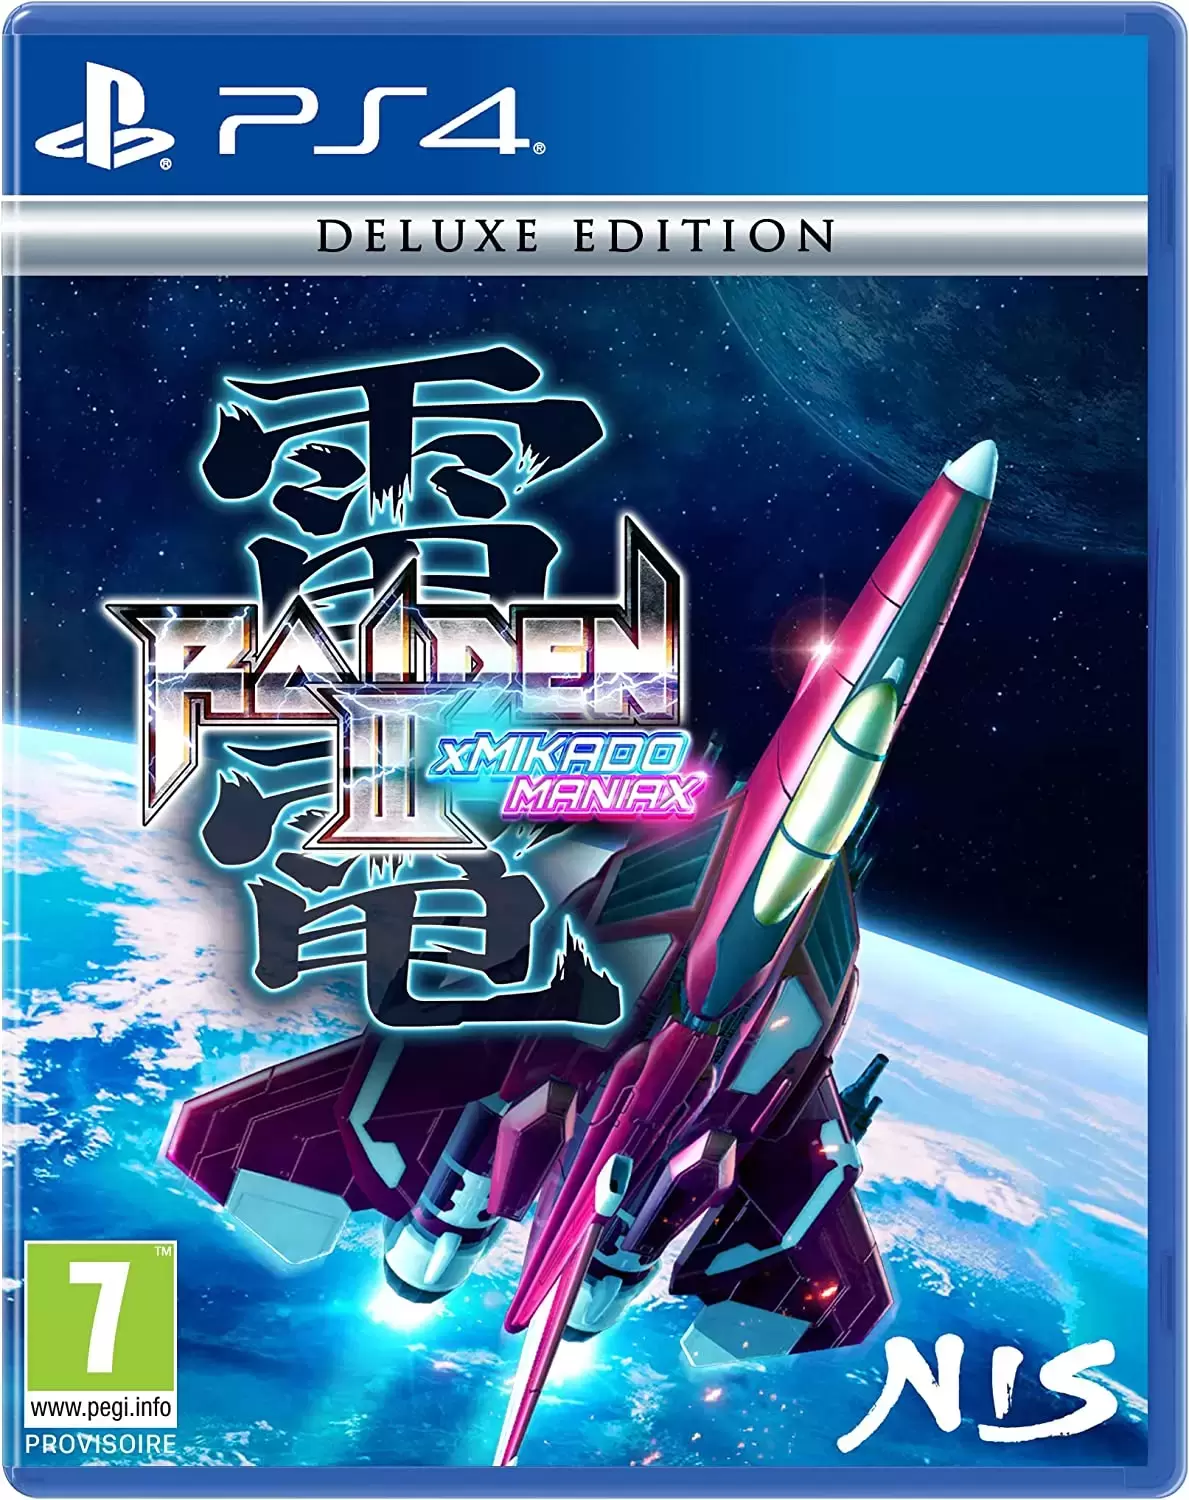 PS4 Games - Raiden III X Mikado Maniax - Deluxe Edition